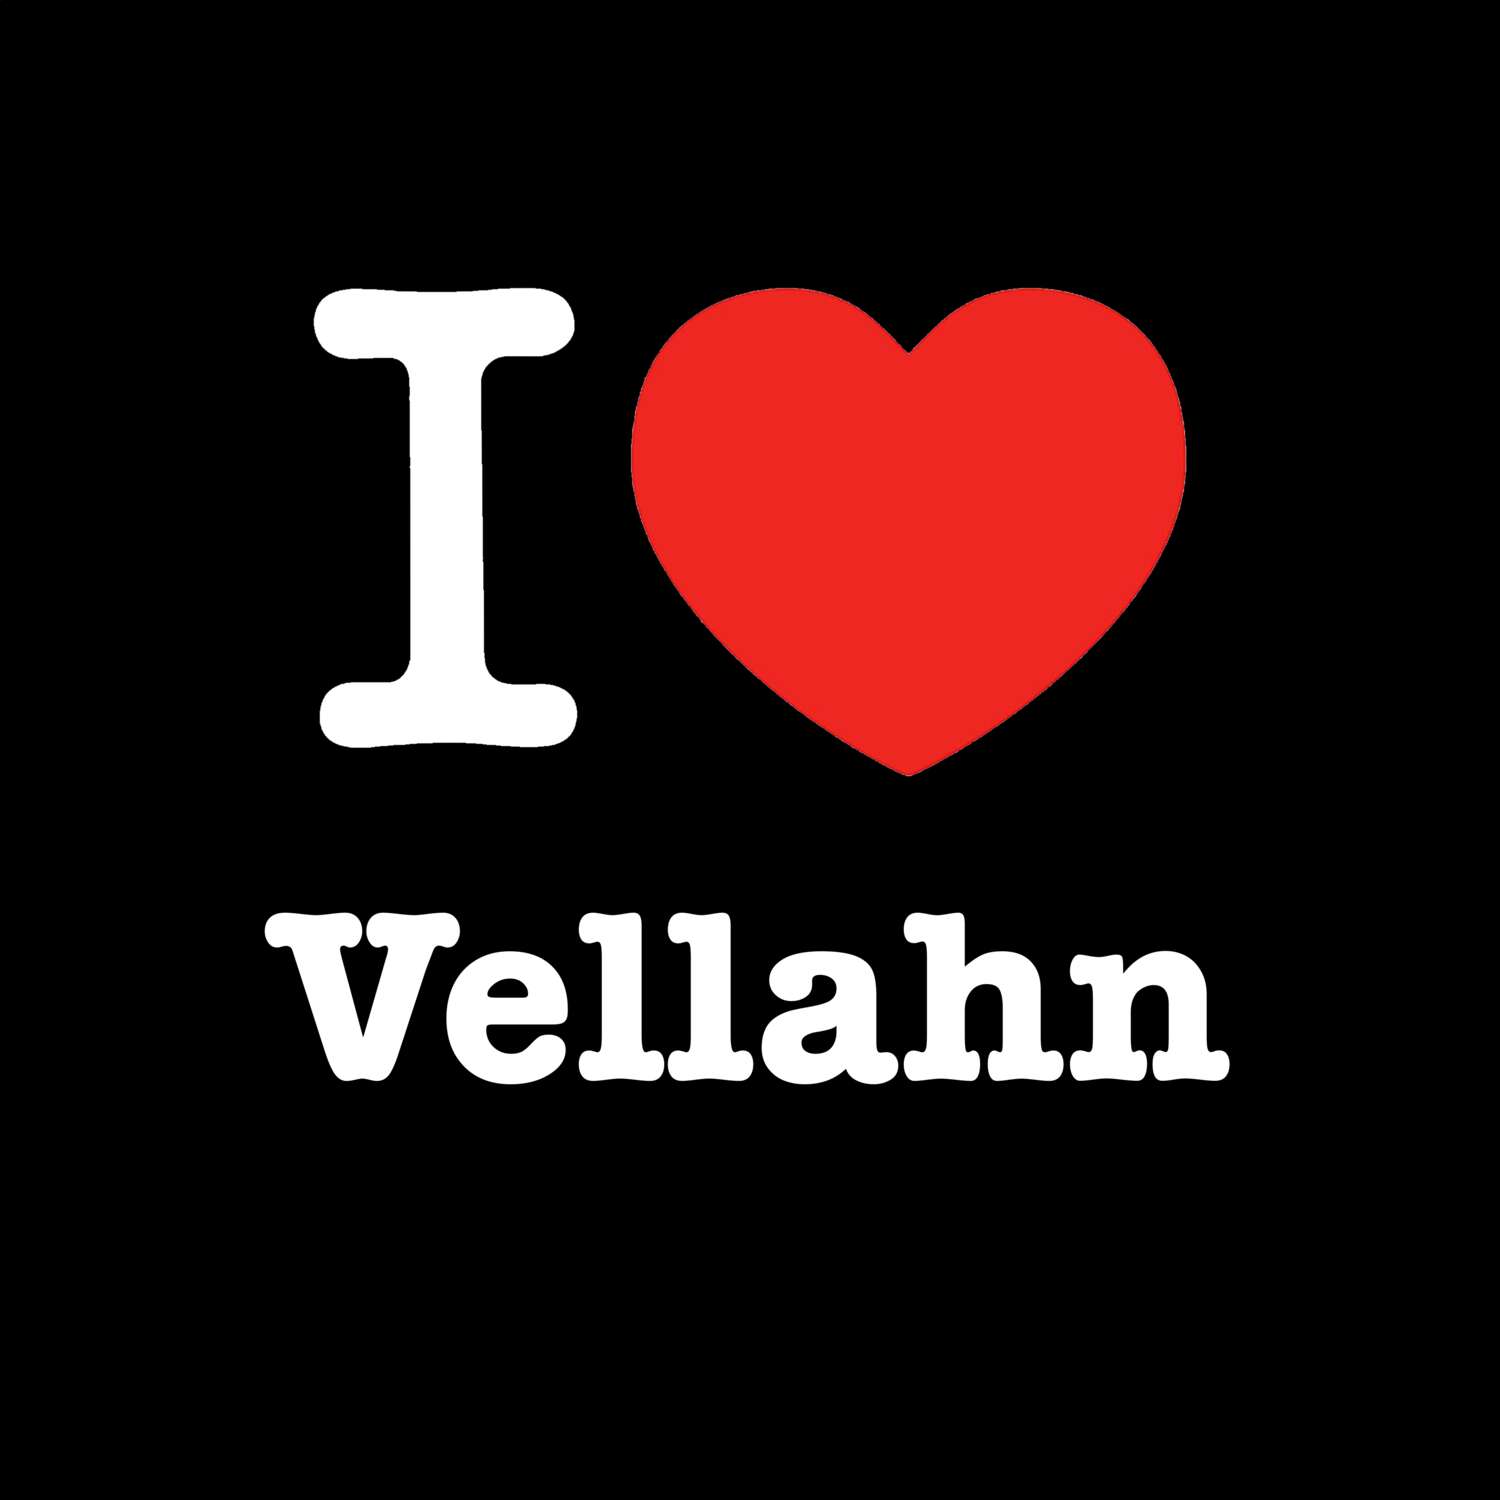 Vellahn T-Shirt »I love«